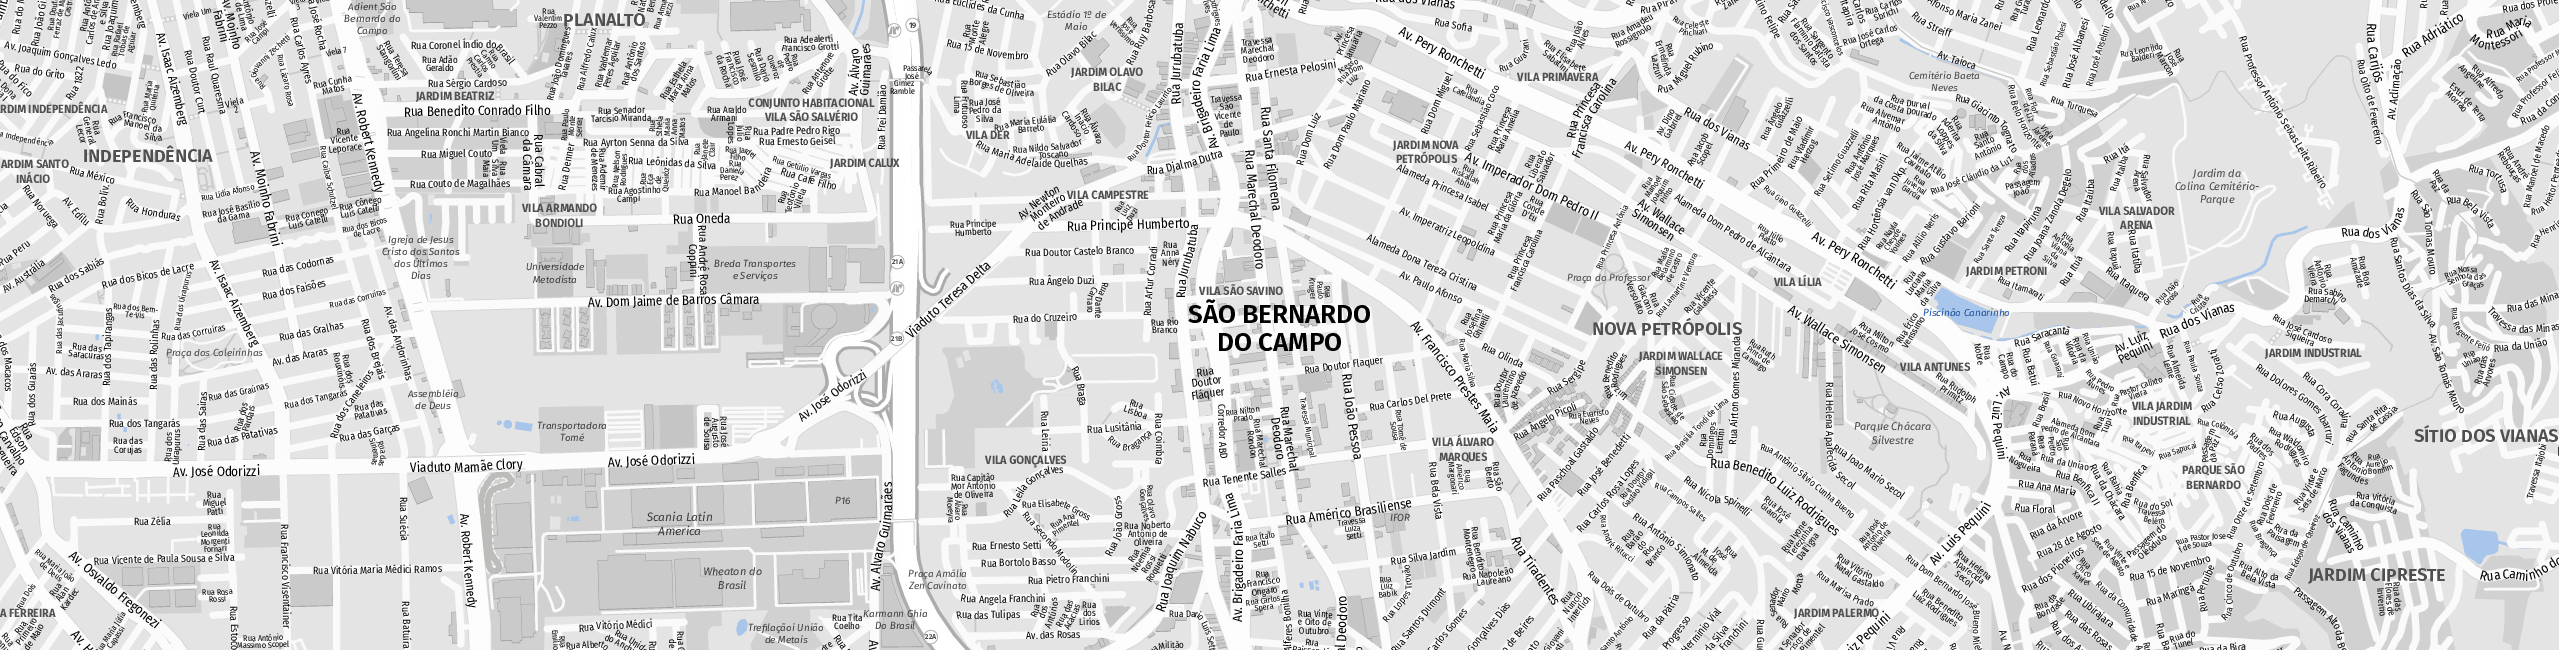 Stadtplan São Bernardo do Campo zum Downloaden.